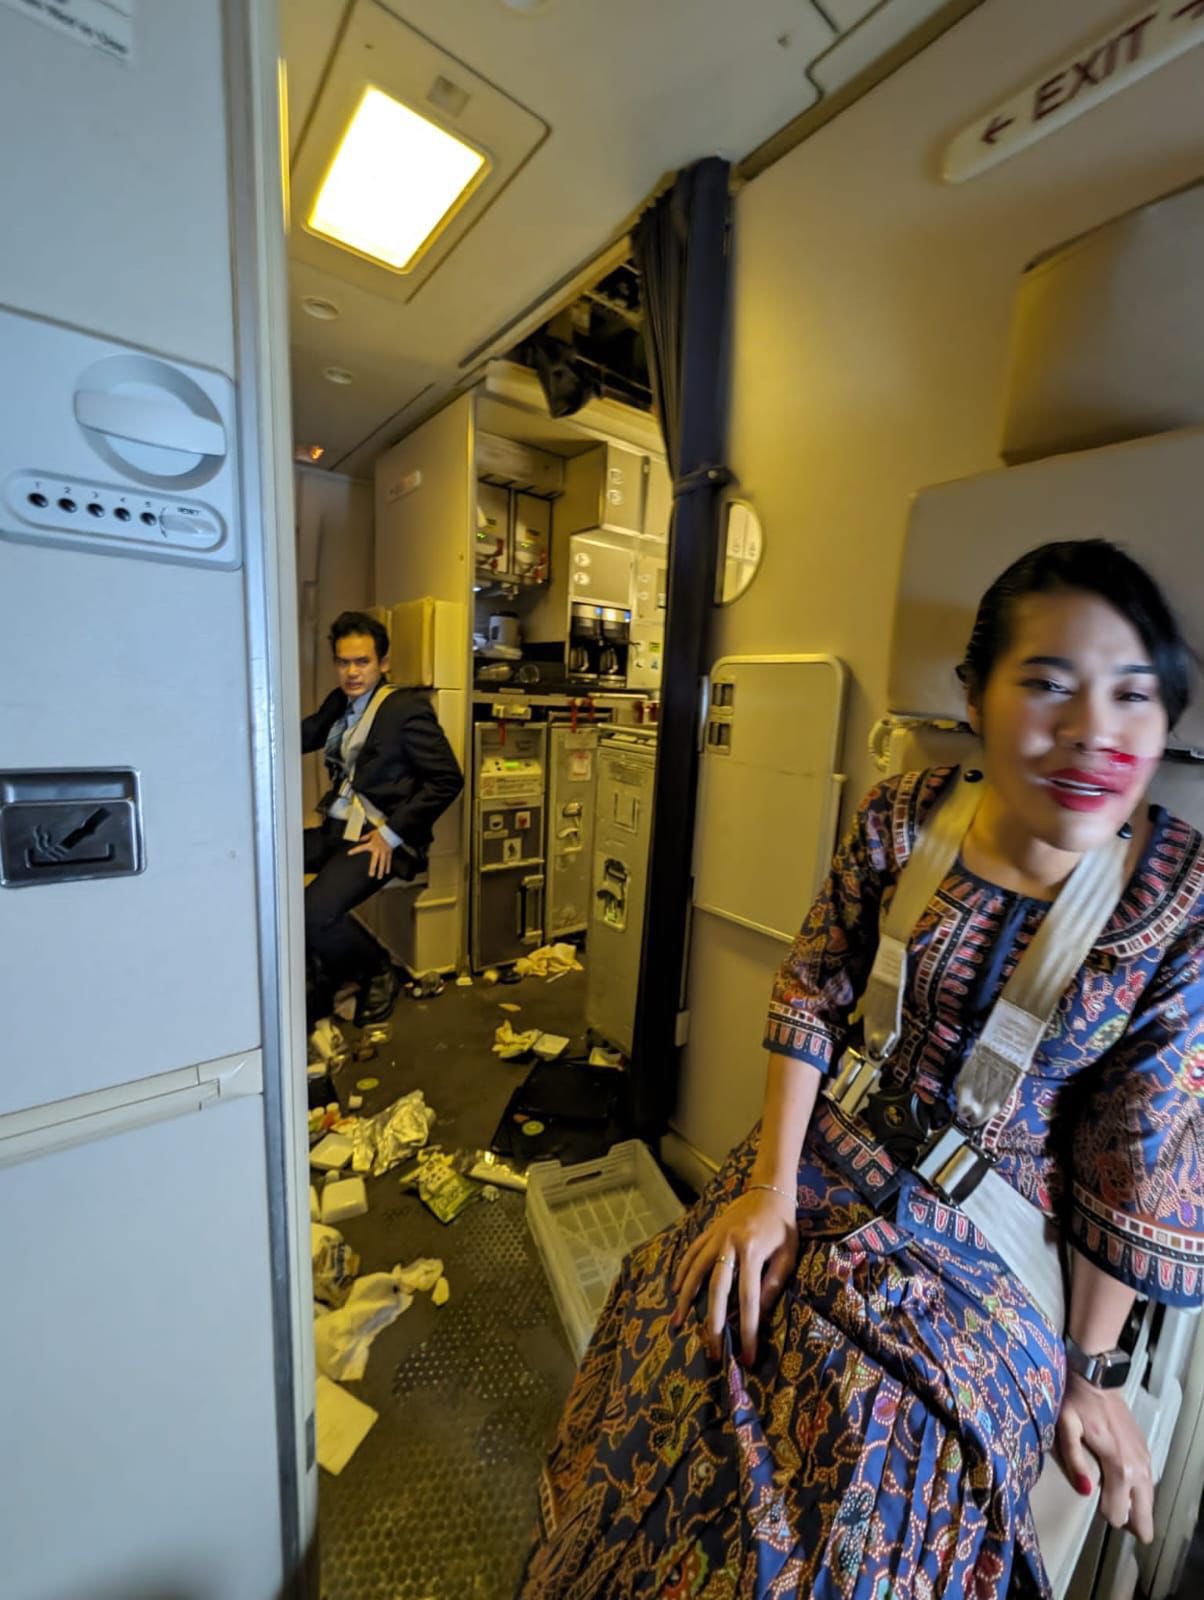 Hàng chục hành khách thương vong trên chuyến bay Singapore Airlines: Chùm ảnh và video hiện trường tiết lộ cảnh tượng kinh hoàng - Ảnh 3.